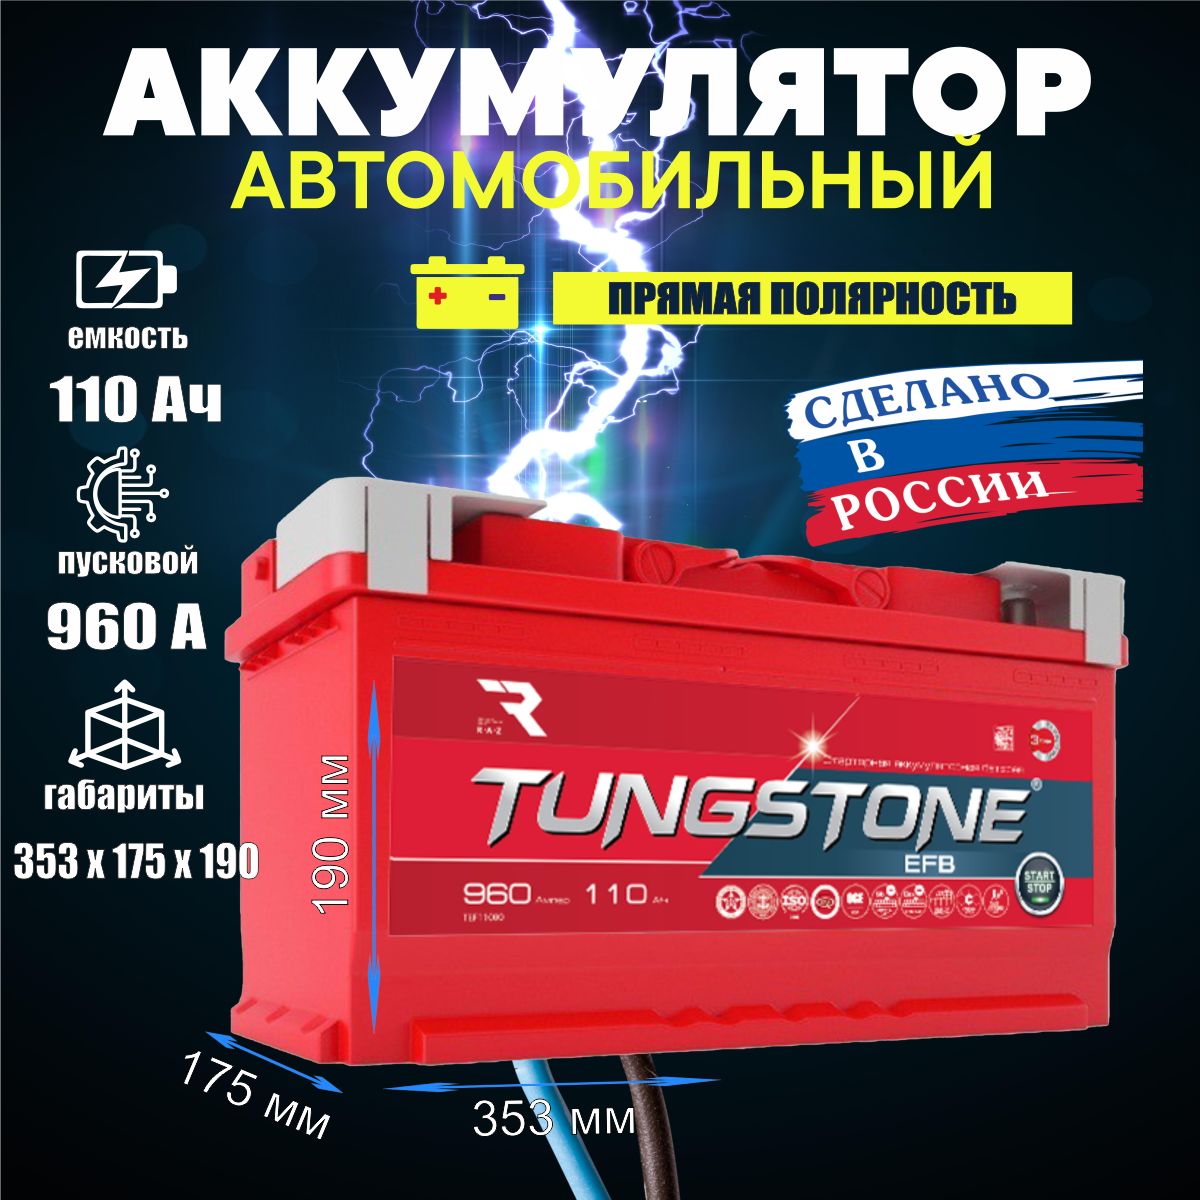 TungstoneАккумуляторавтомобильный,110А•ч,Прямая(+/-)полярность